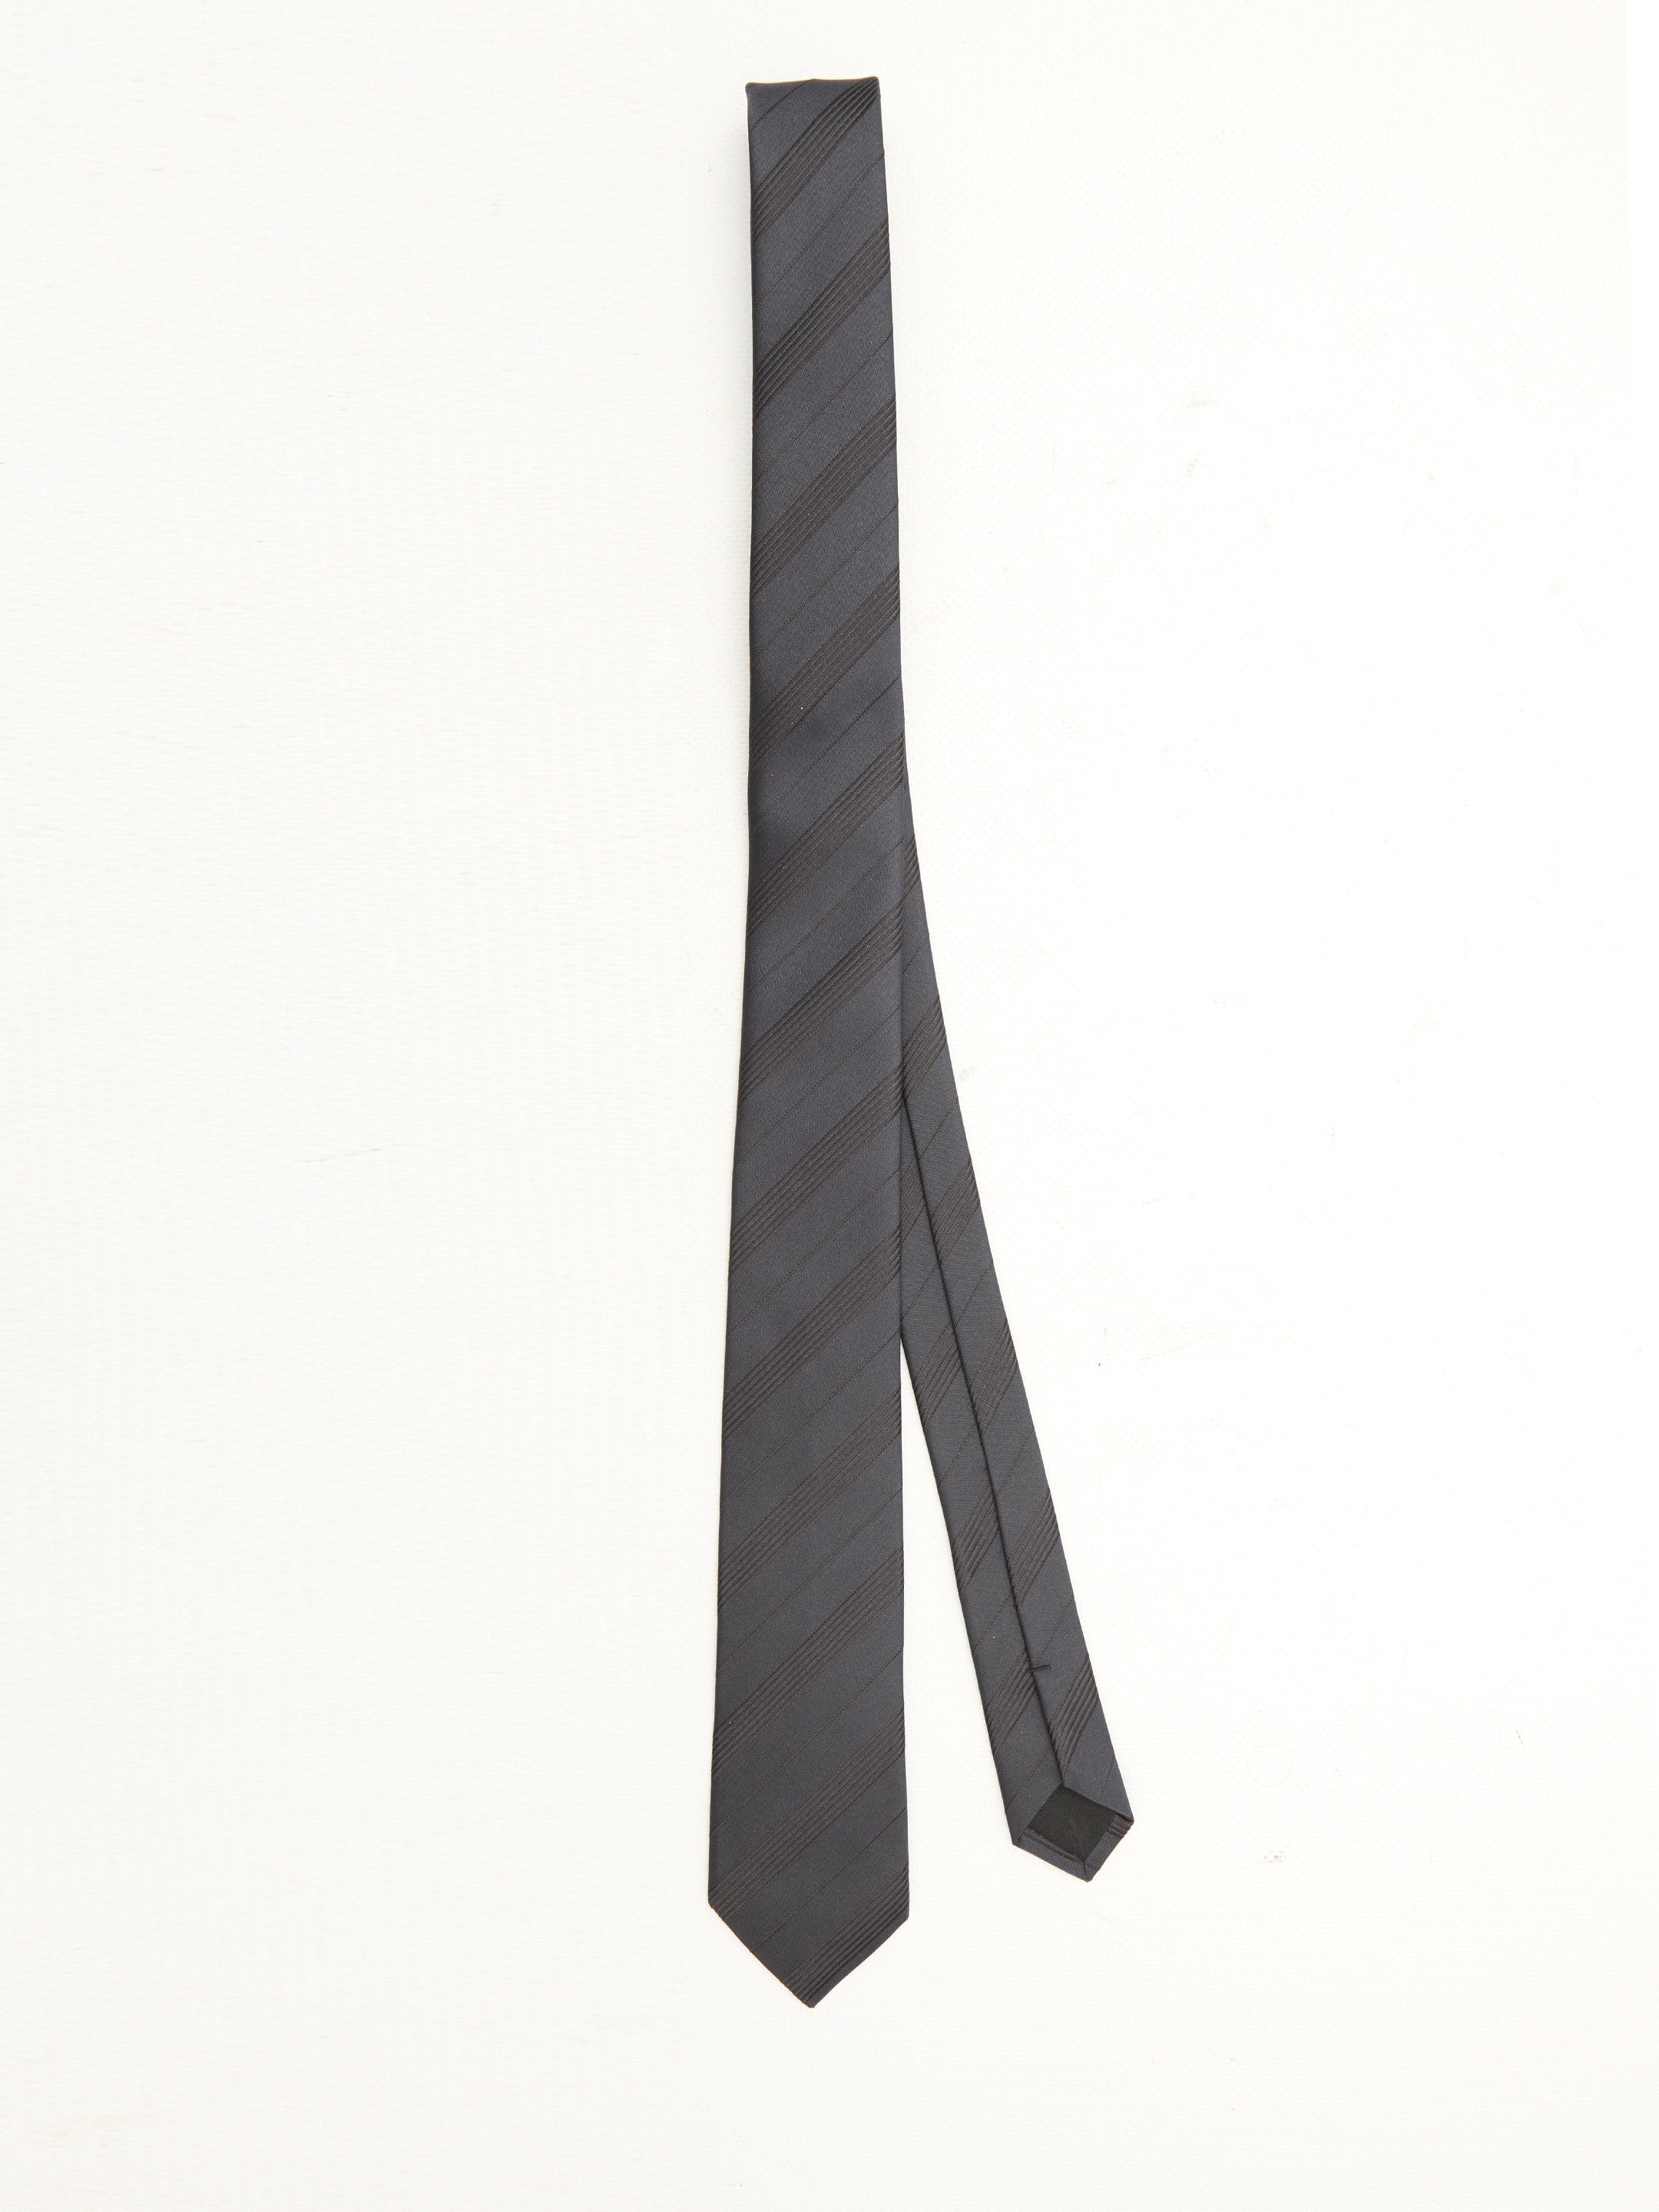 SAINT-LAURENT-OUTLET-SALE-Striped-tie-in-silk-Accessoires-QT-BLUE-ARCHIVE-COLLECTION.jpg